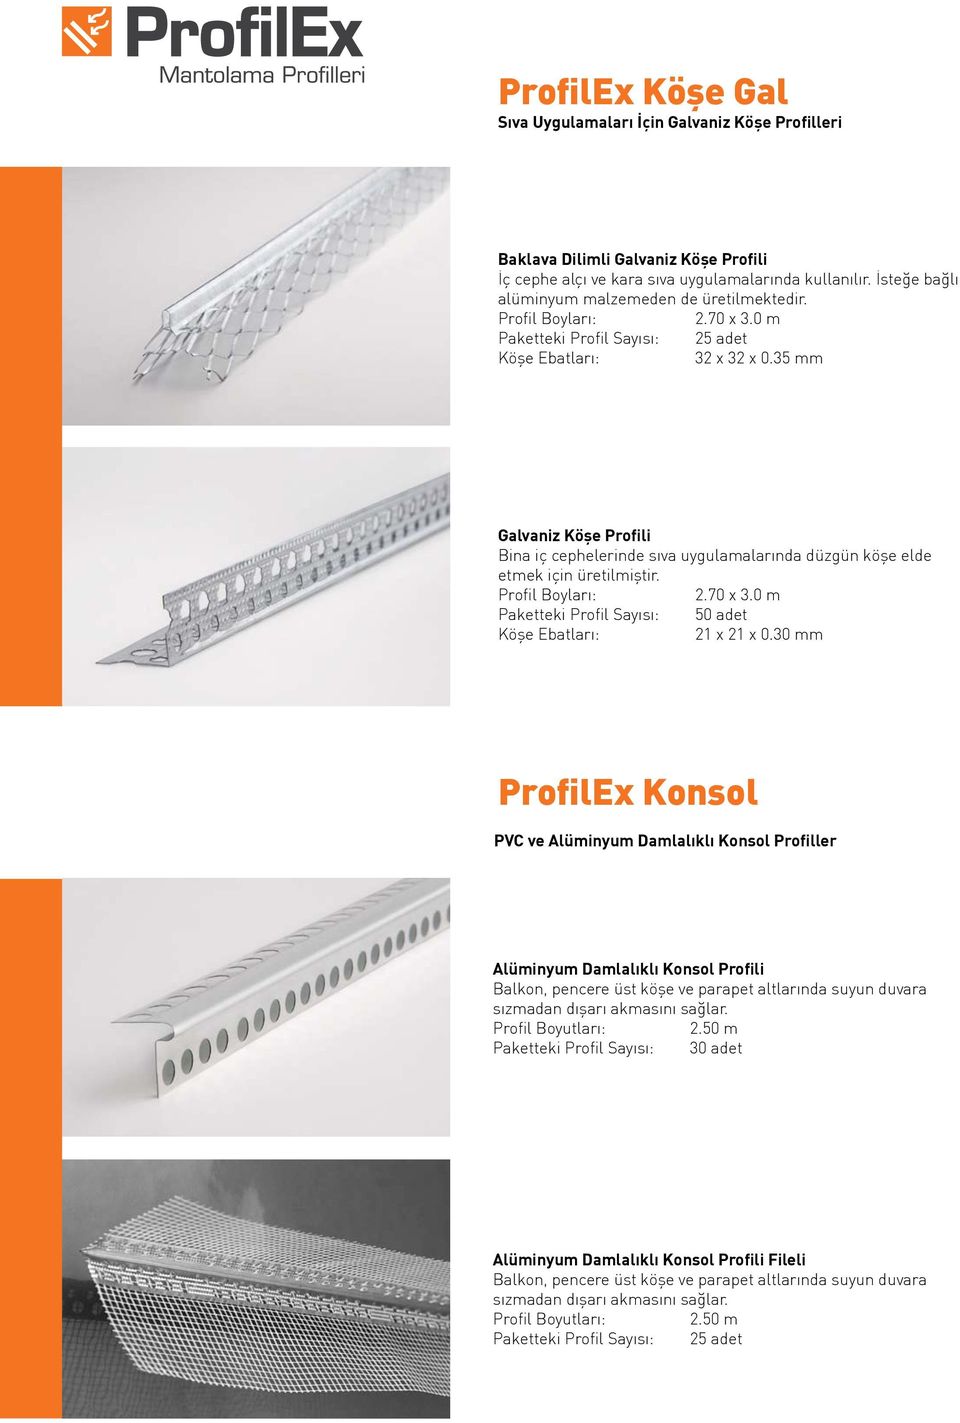 35 mm Galvaniz Köşe Profili Bina iç cephelerinde sıva uygulamalarında düzgün köşe elde etmek için üretilmiştir. 2.70 x 21 x 21 x 0.